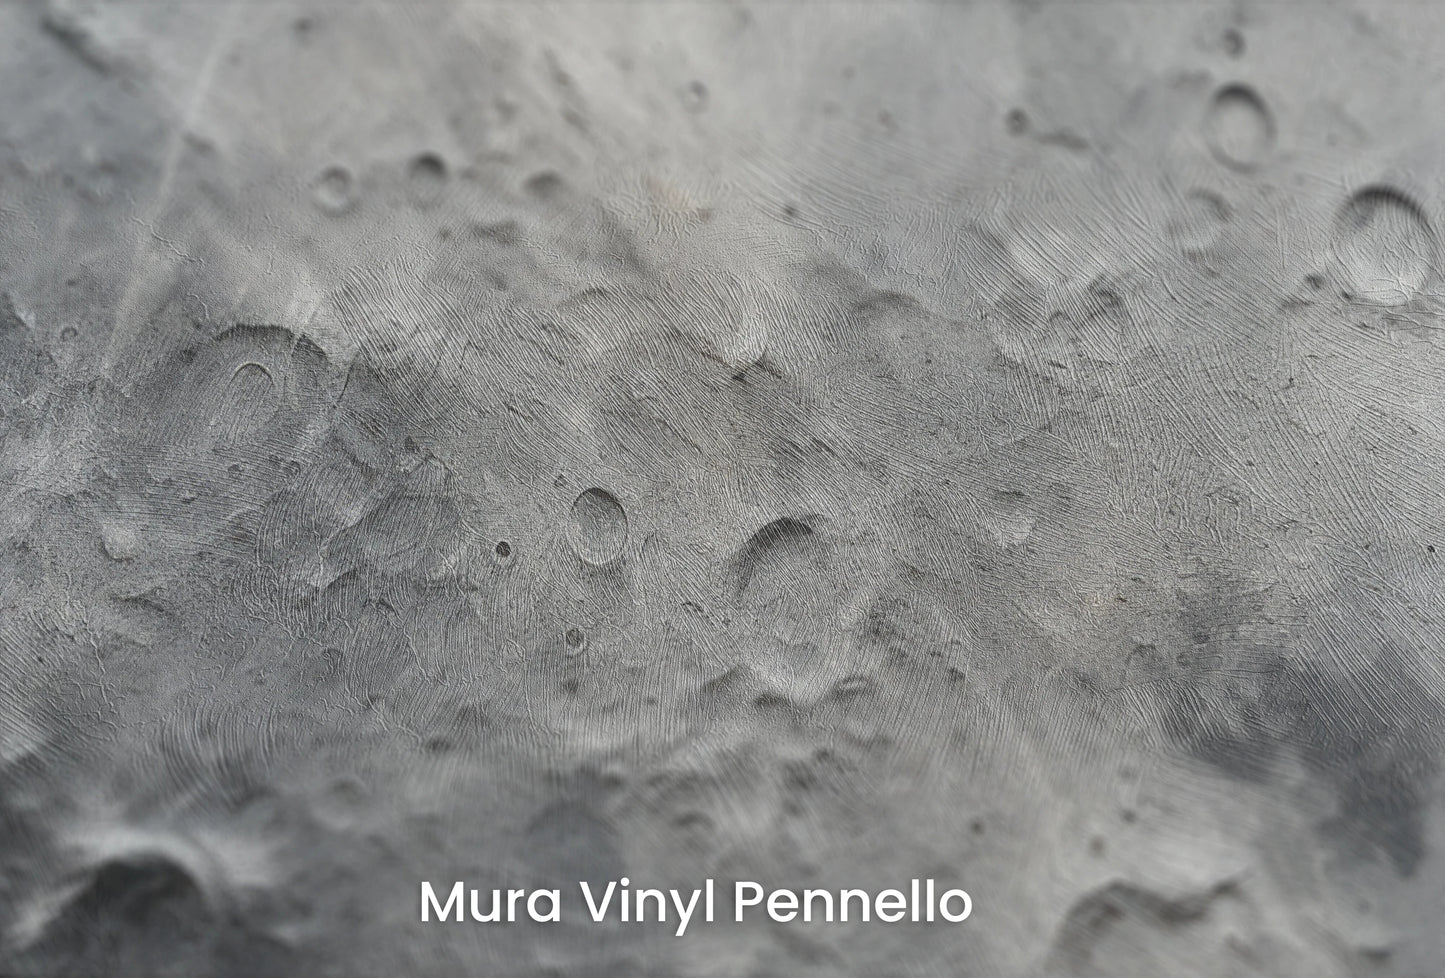 Zbliżenie na artystyczną fototapetę o nazwie Lunar Craters na podłożu Mura Vinyl Pennello - faktura pociągnięć pędzla malarskiego.